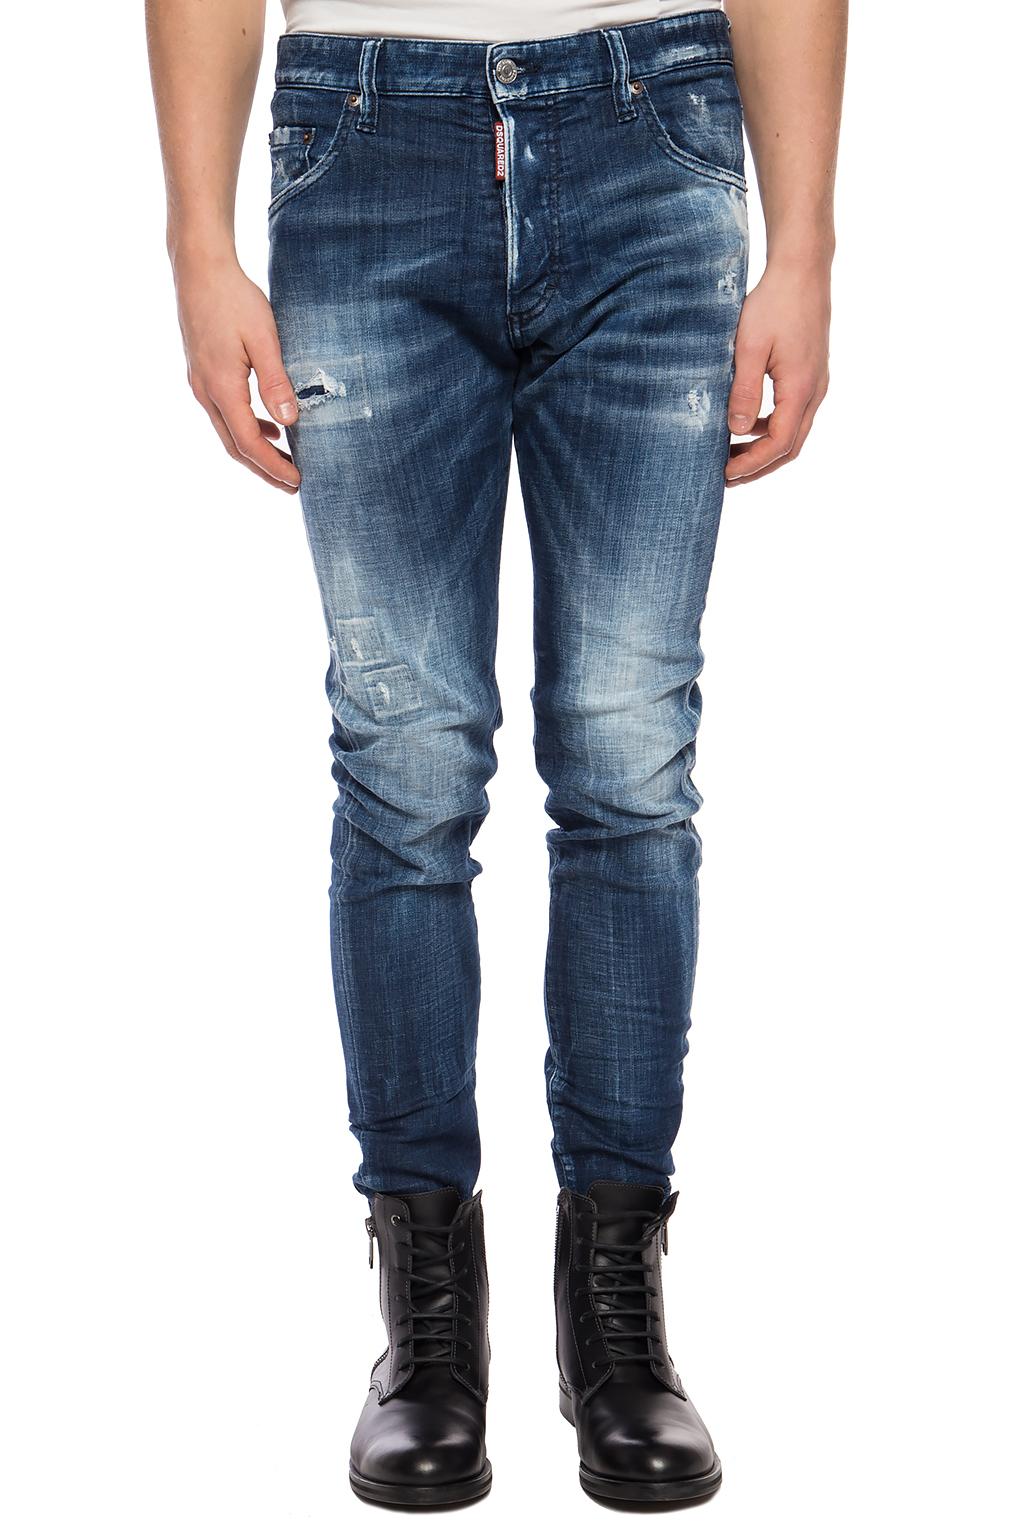 Navy blue 'Skinny Dan Jean' jeans Dsquared2 - Vitkac GB